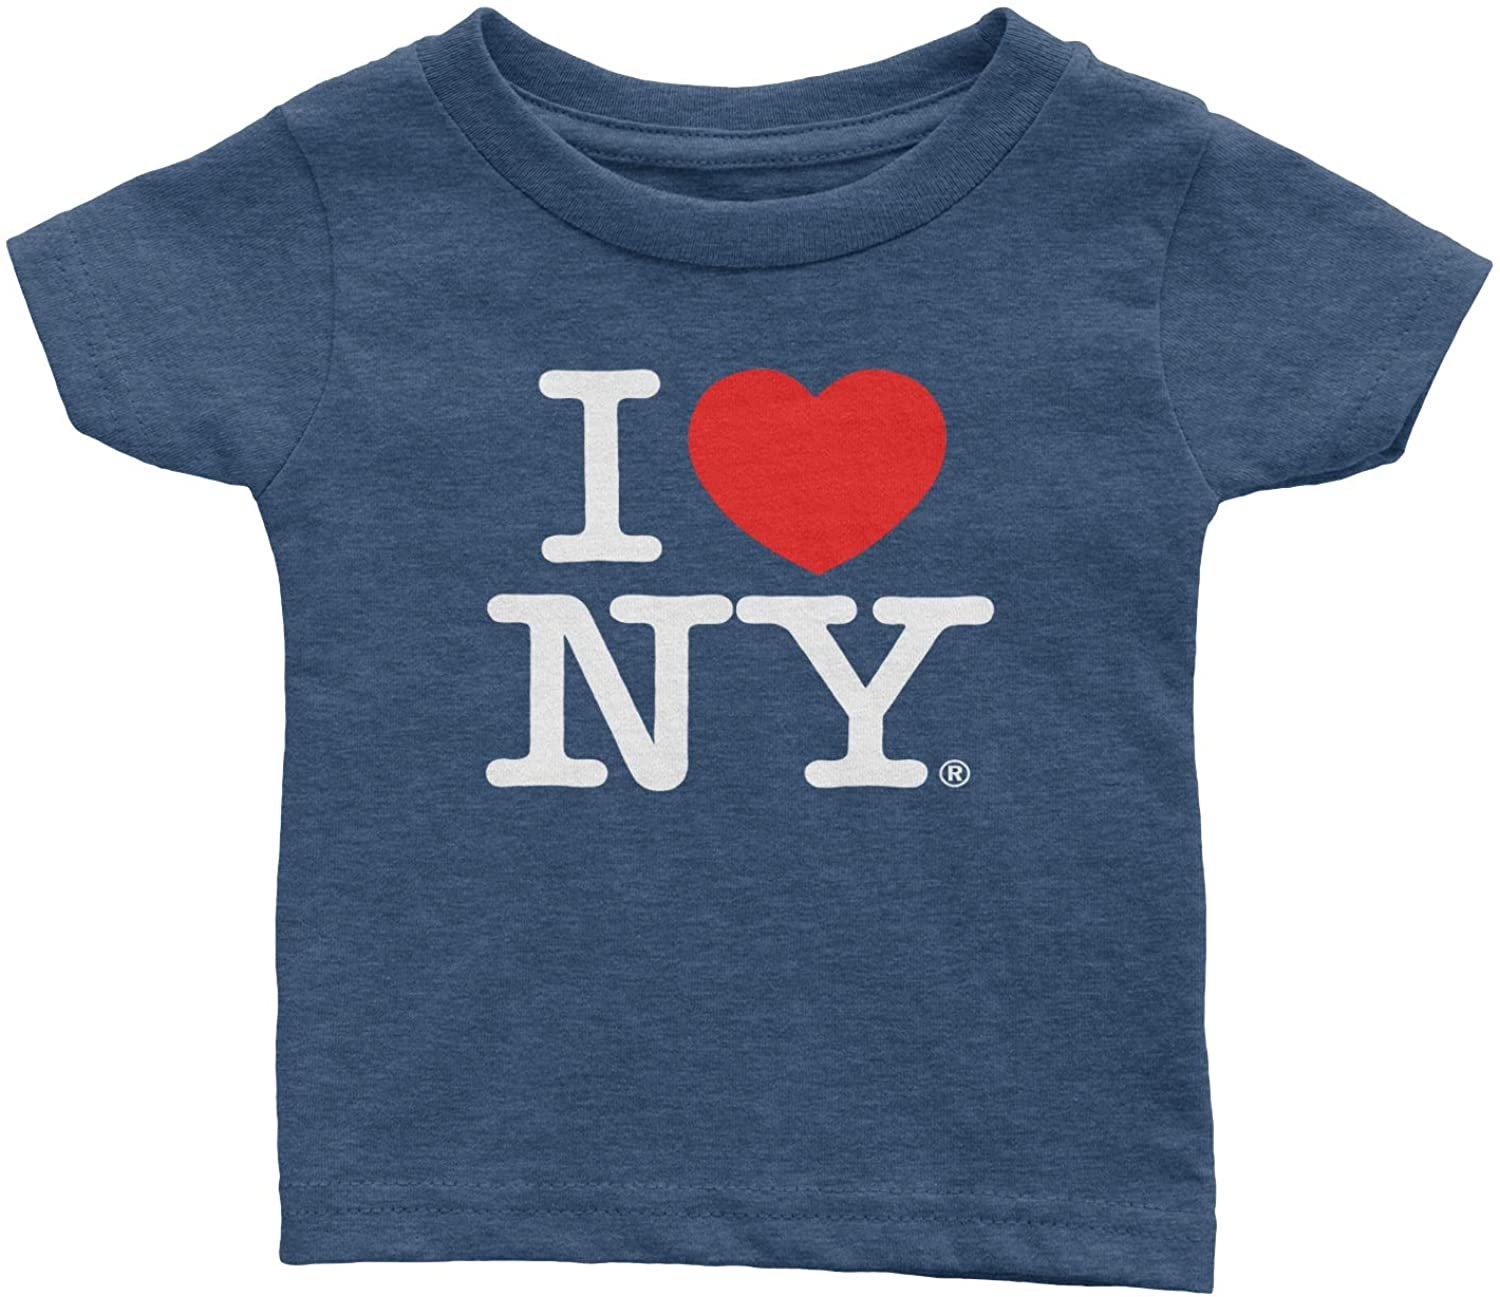 Ich liebe NY Baby T-Shirt Heather Denim